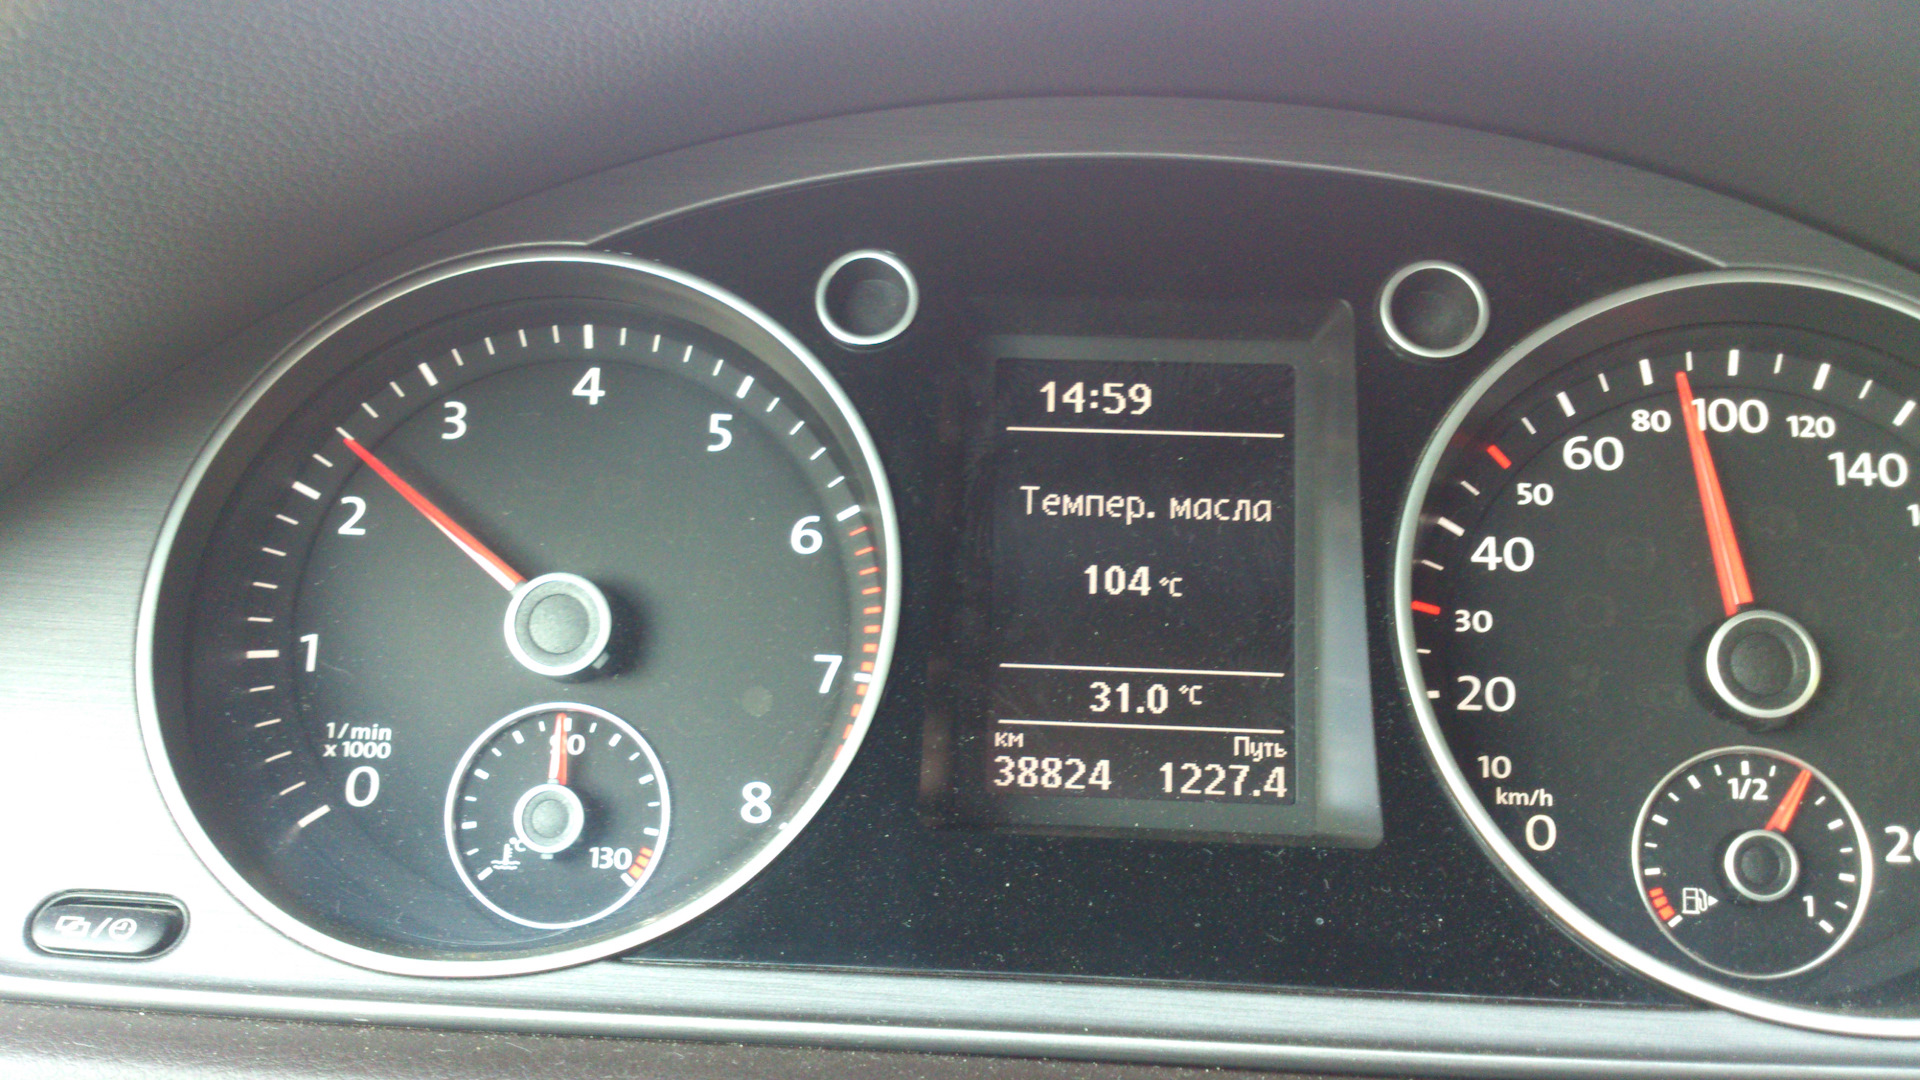 Температура масла бмв. Volkswagen Jetta 5 максидот. Passat b7 1.8 температура масла в Мороз. Температура масла Пассат б7. Температура масла в WV b7 121 градус.